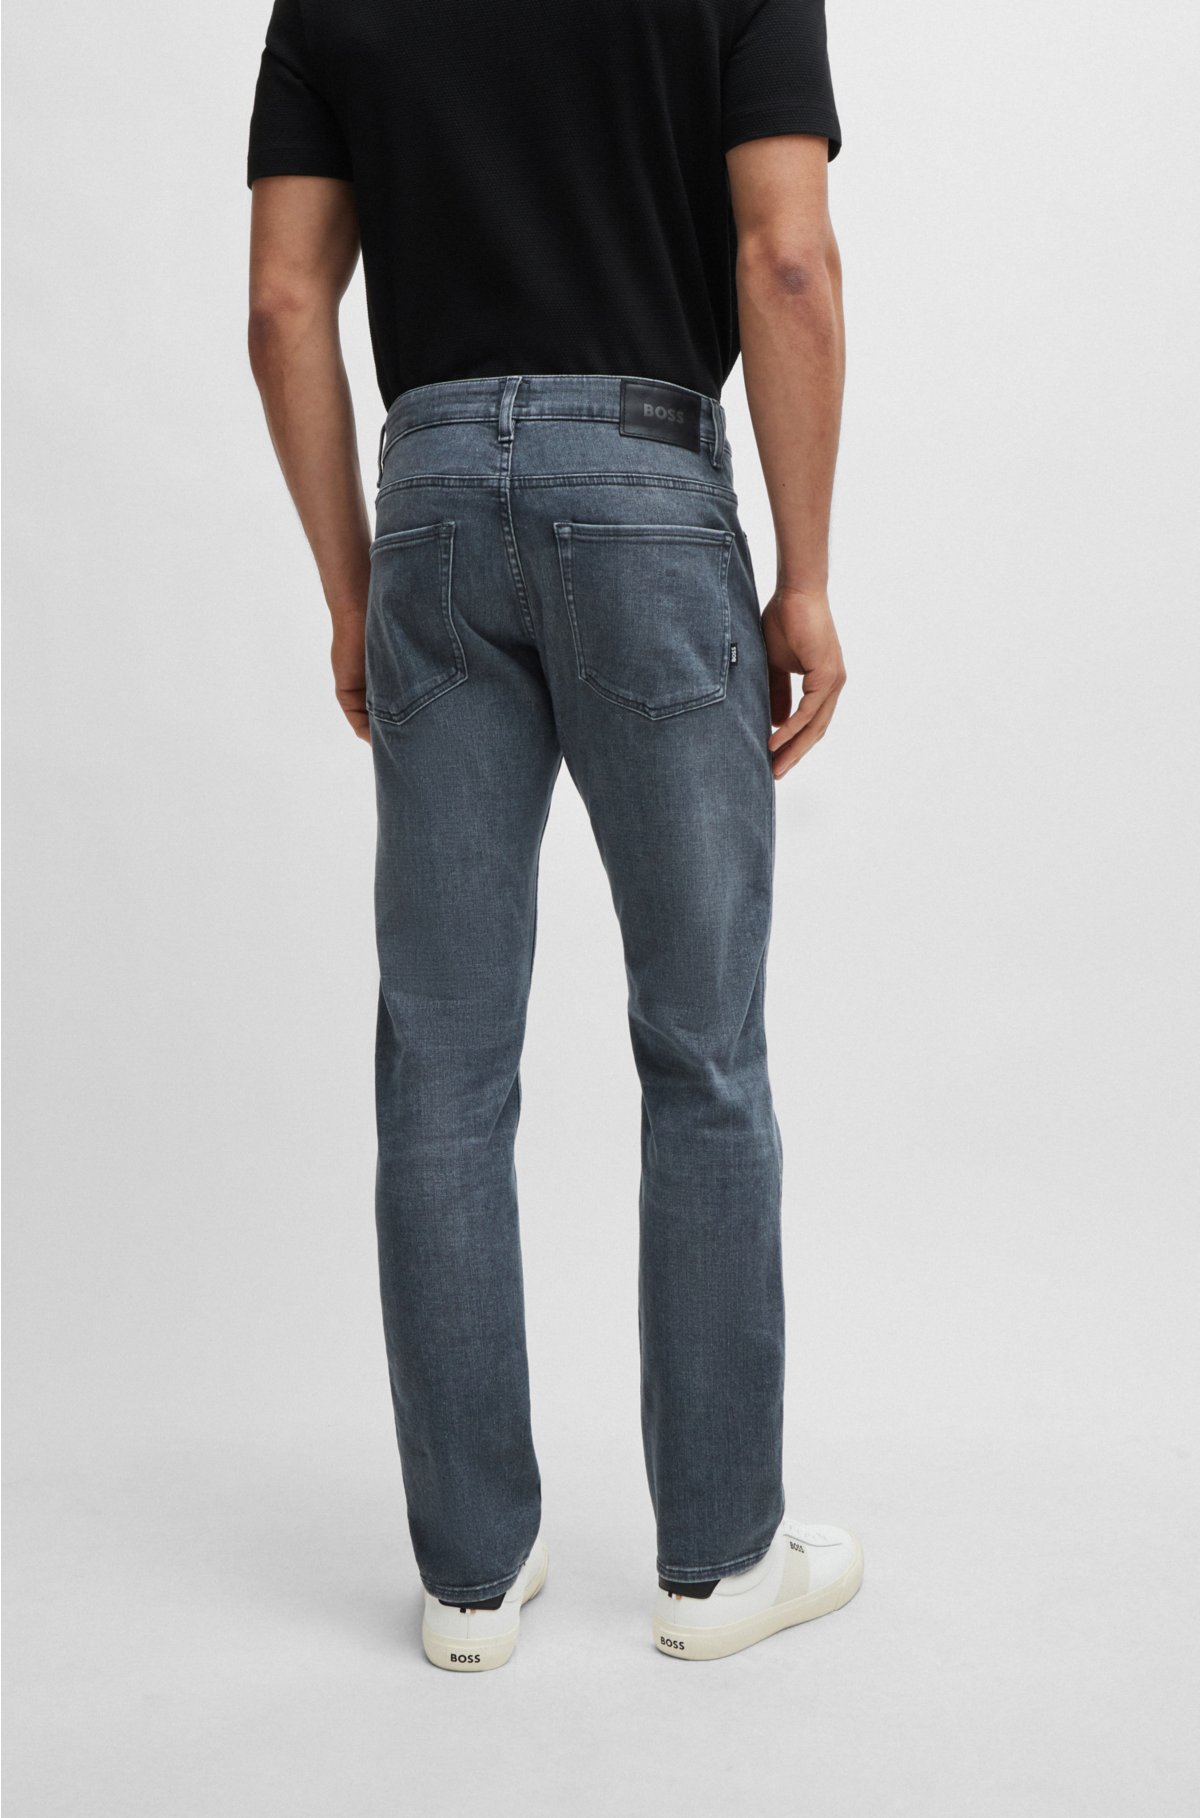 Fordampe velsignelse Velkommen BOSS - Slim-fit jeans in grey Italian super-soft denim